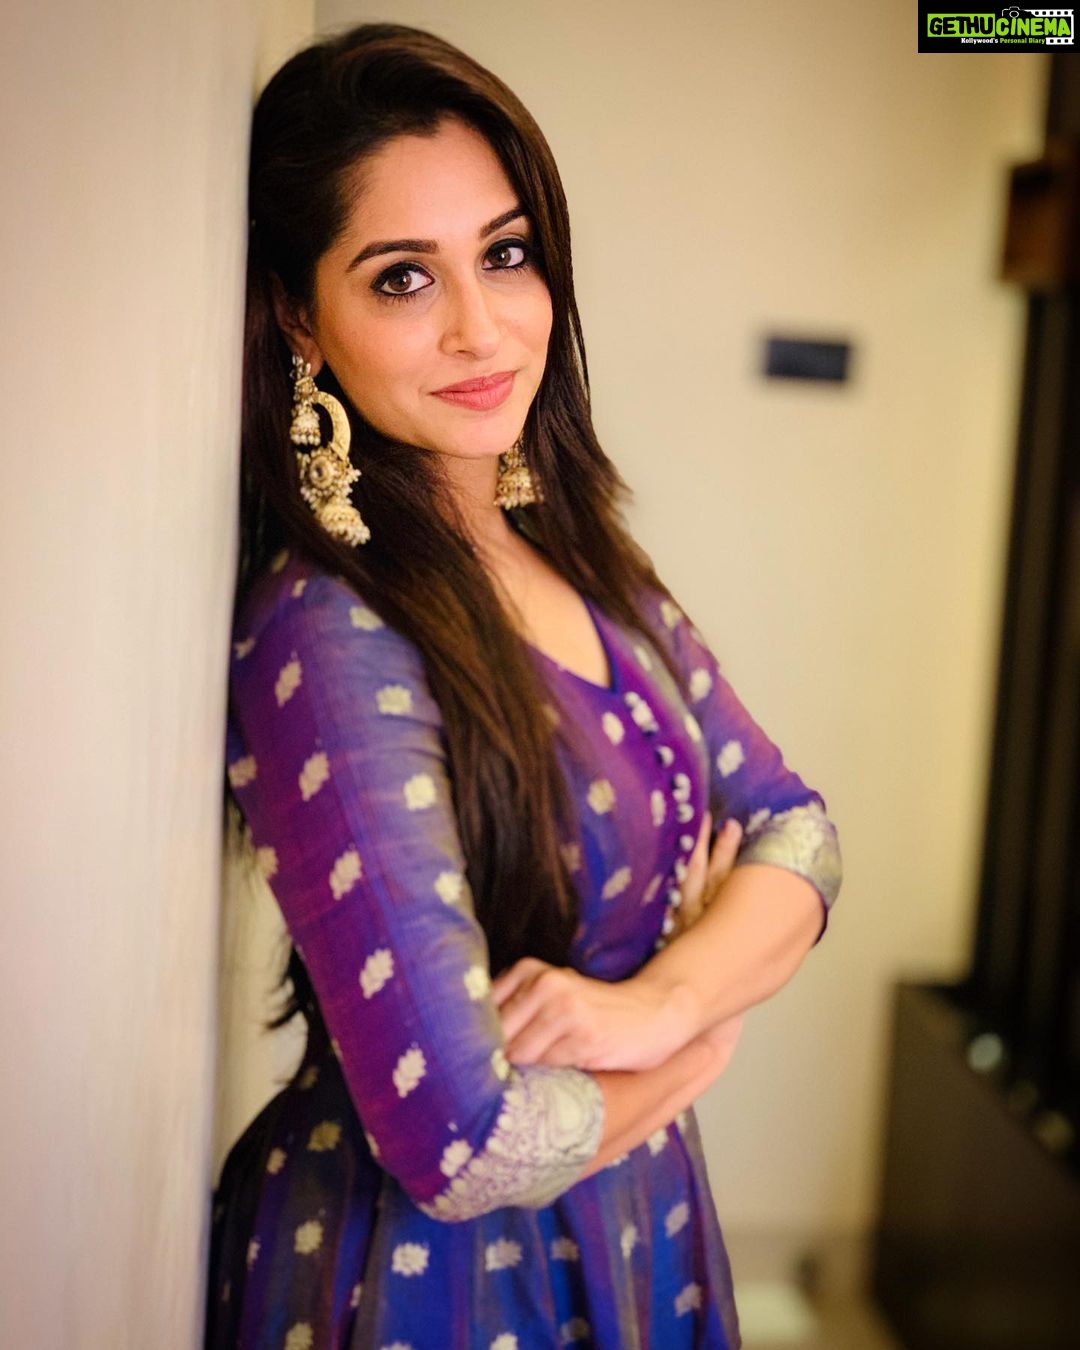 Actress Dipika Kakar HD Photos and Wallpapers September 2019 - Gethu Cinema